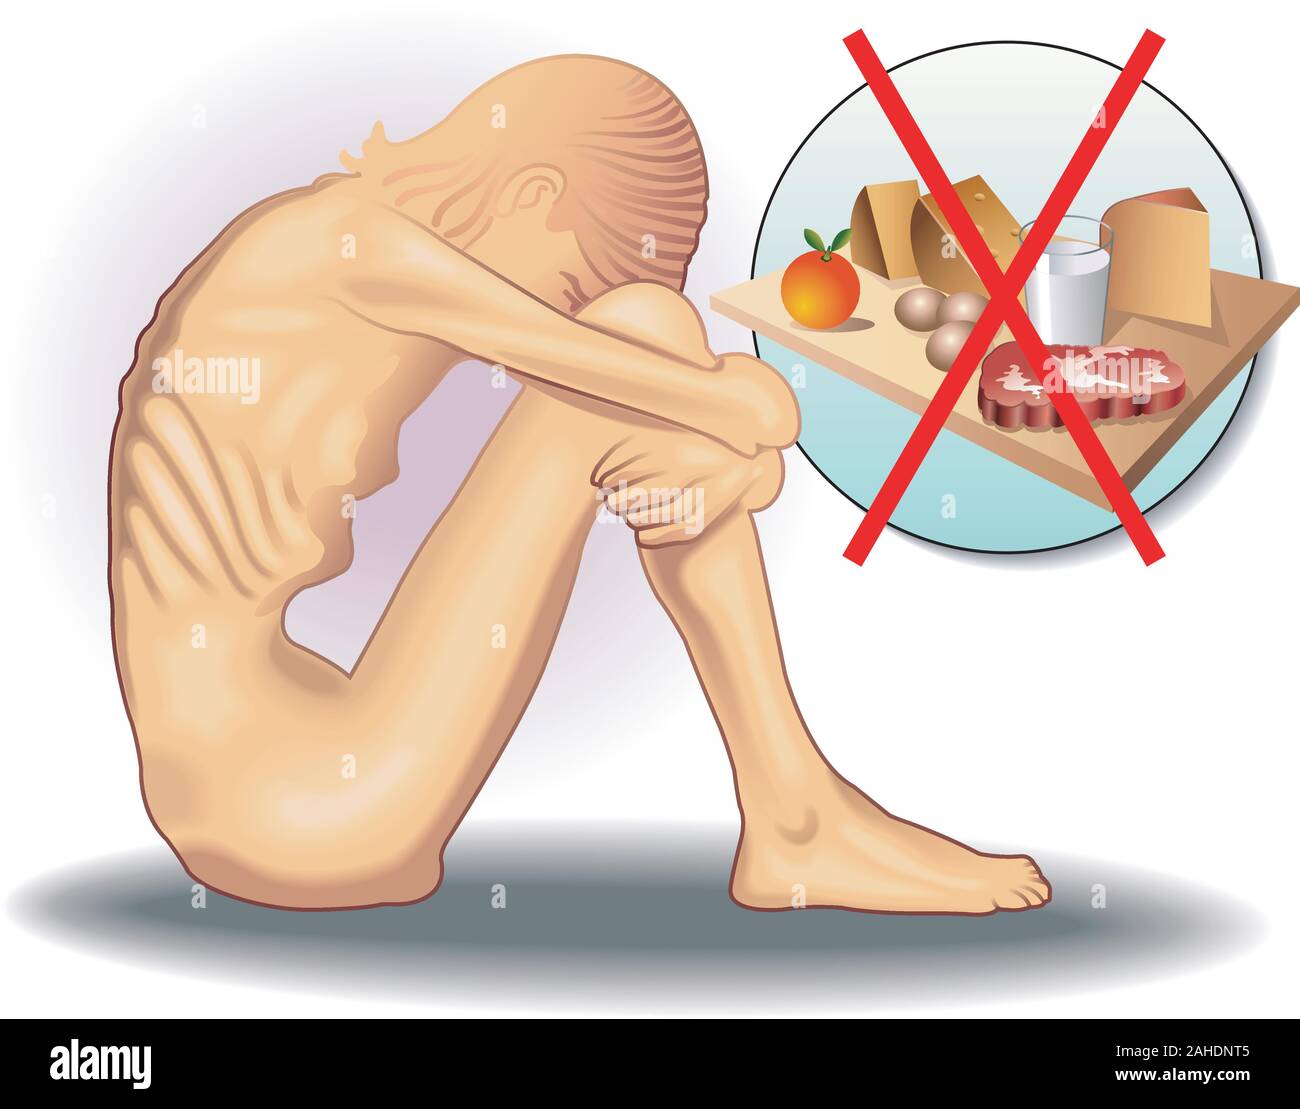 Symbolische medizinische Illustration der Essstörung, Anorexie. Stock Vektor